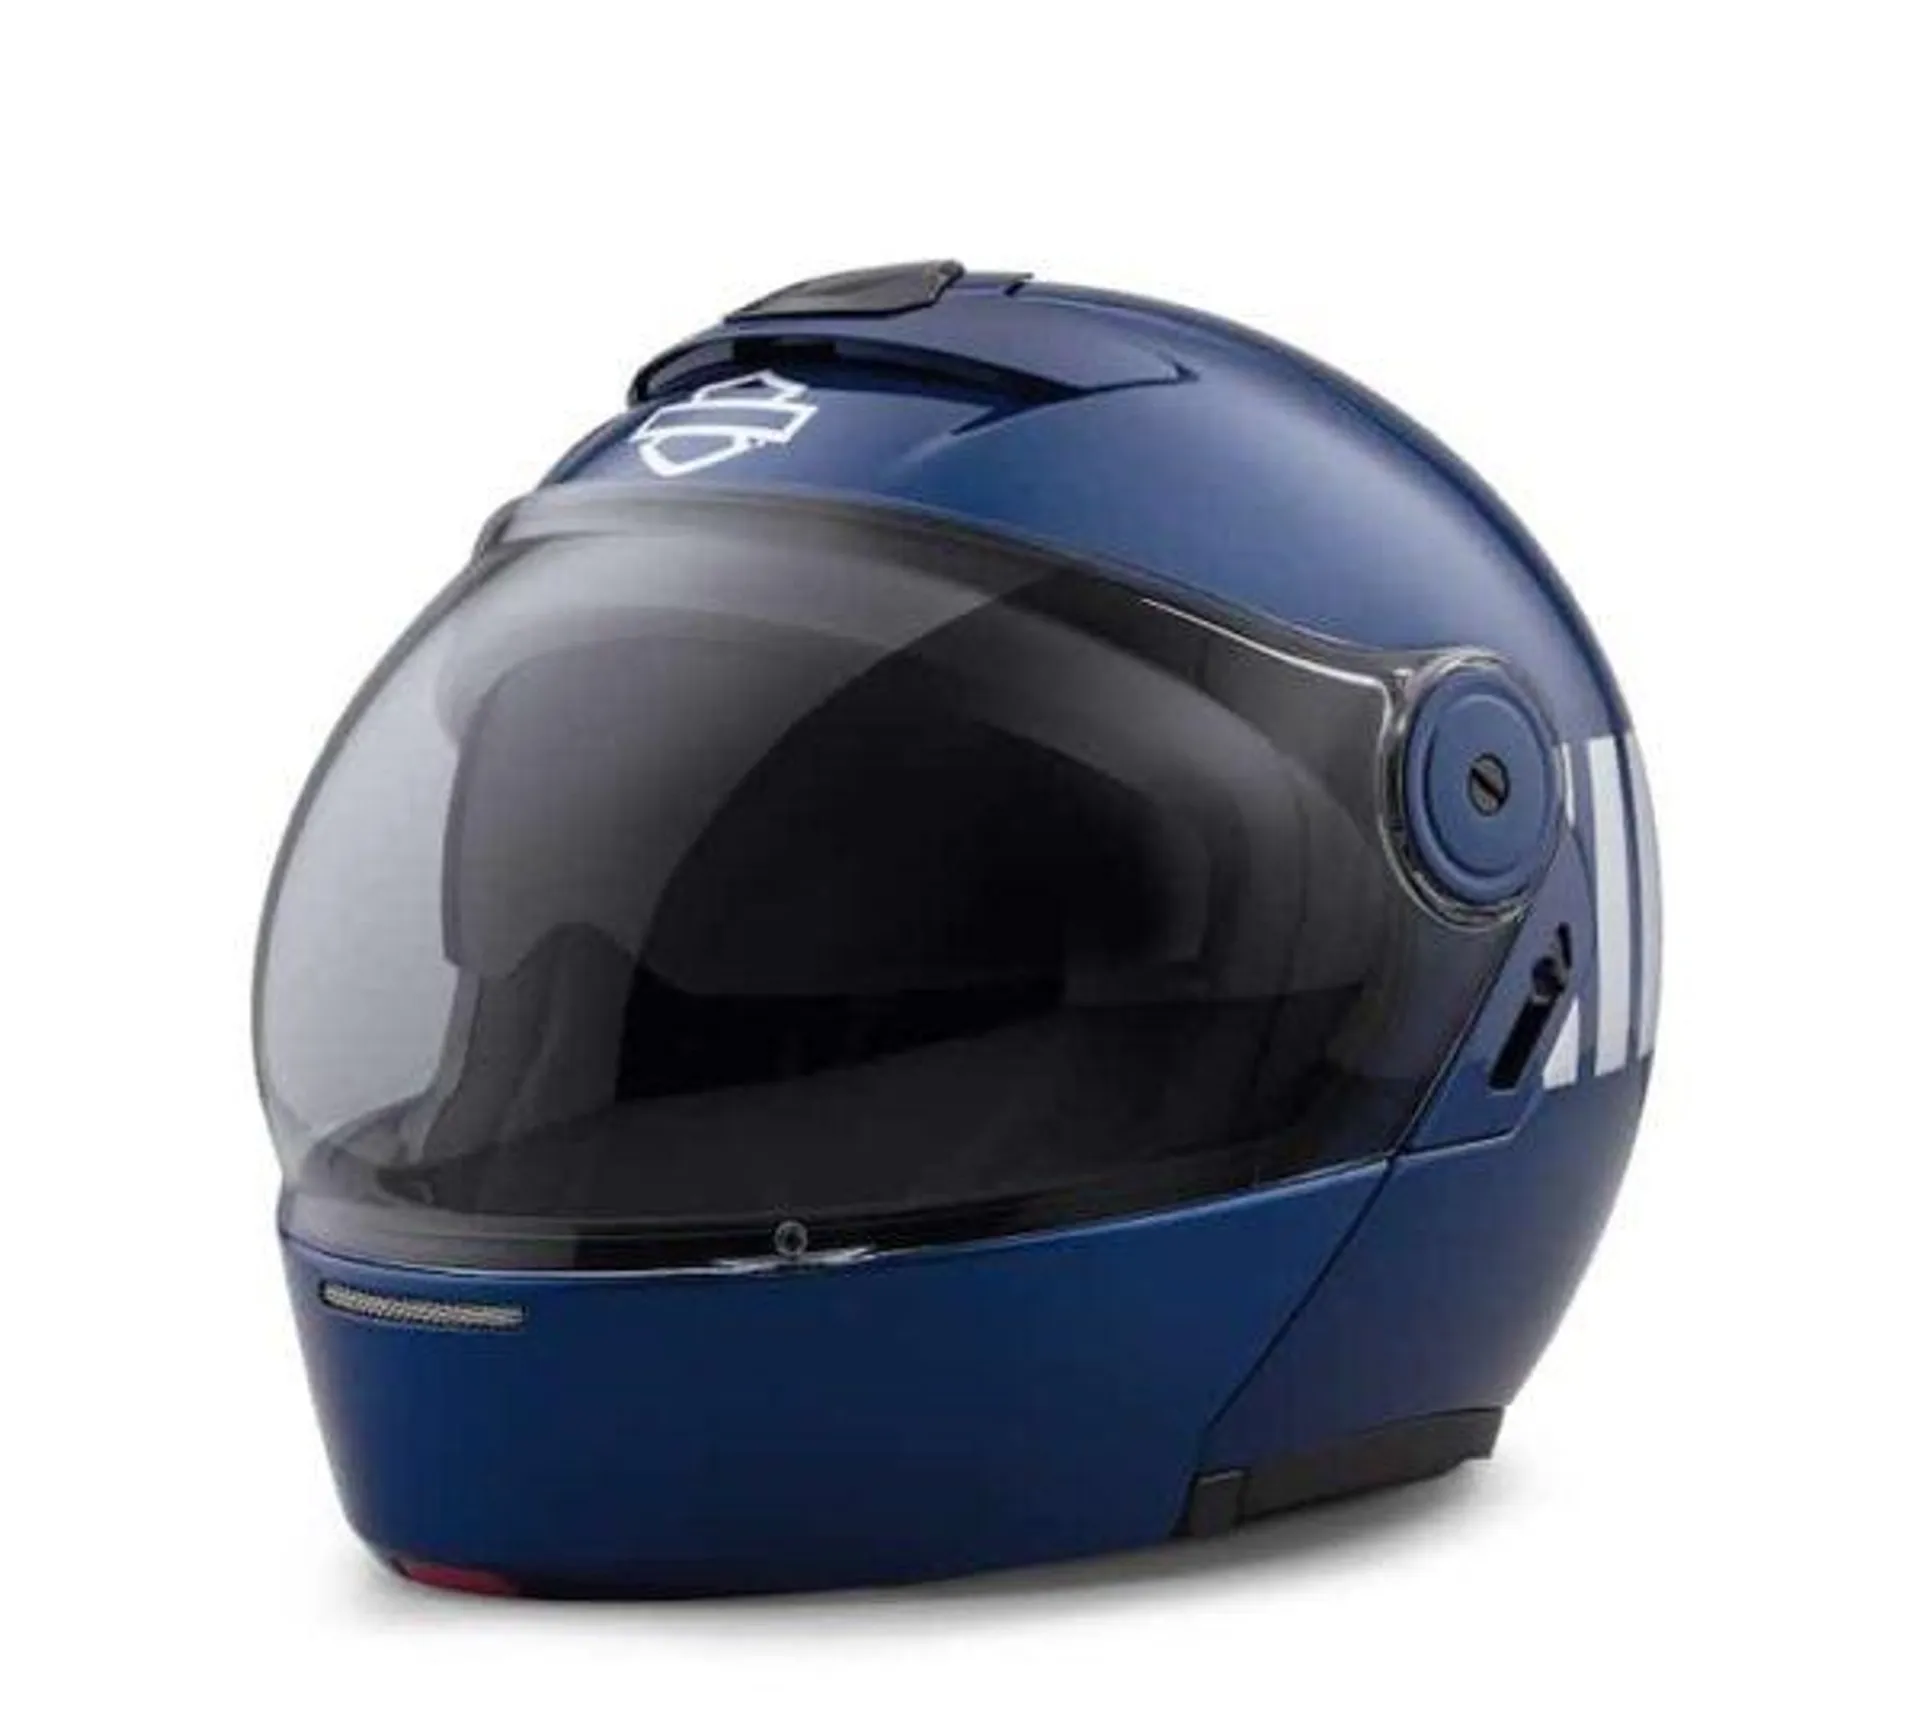 Myer J08 Modular Helmet